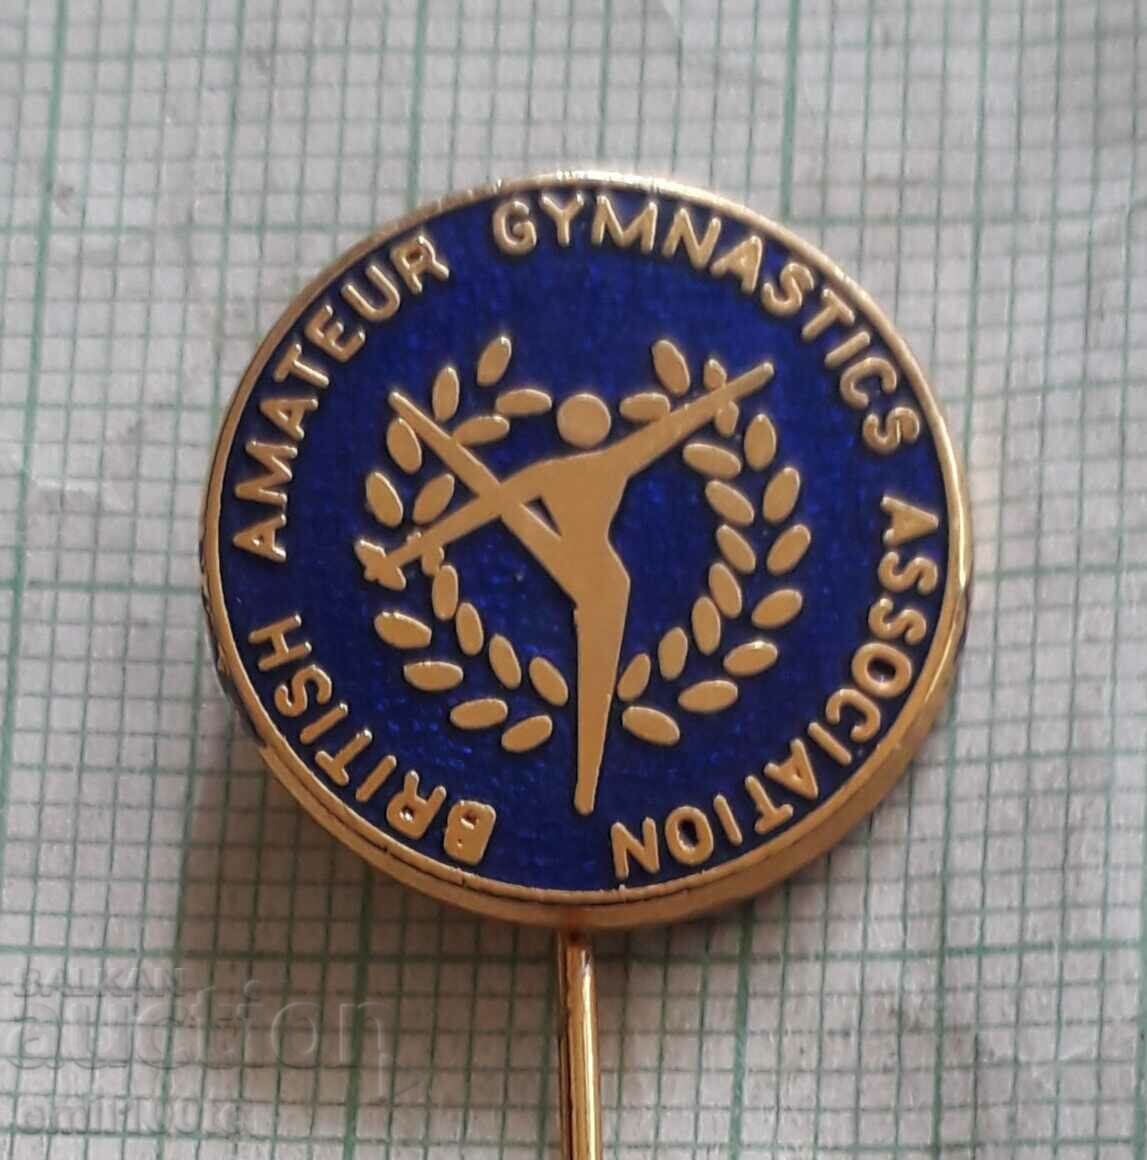 Σήμα - Βρετανική Ομοσπονδία Ερασιτεχνικής Γυμναστικής